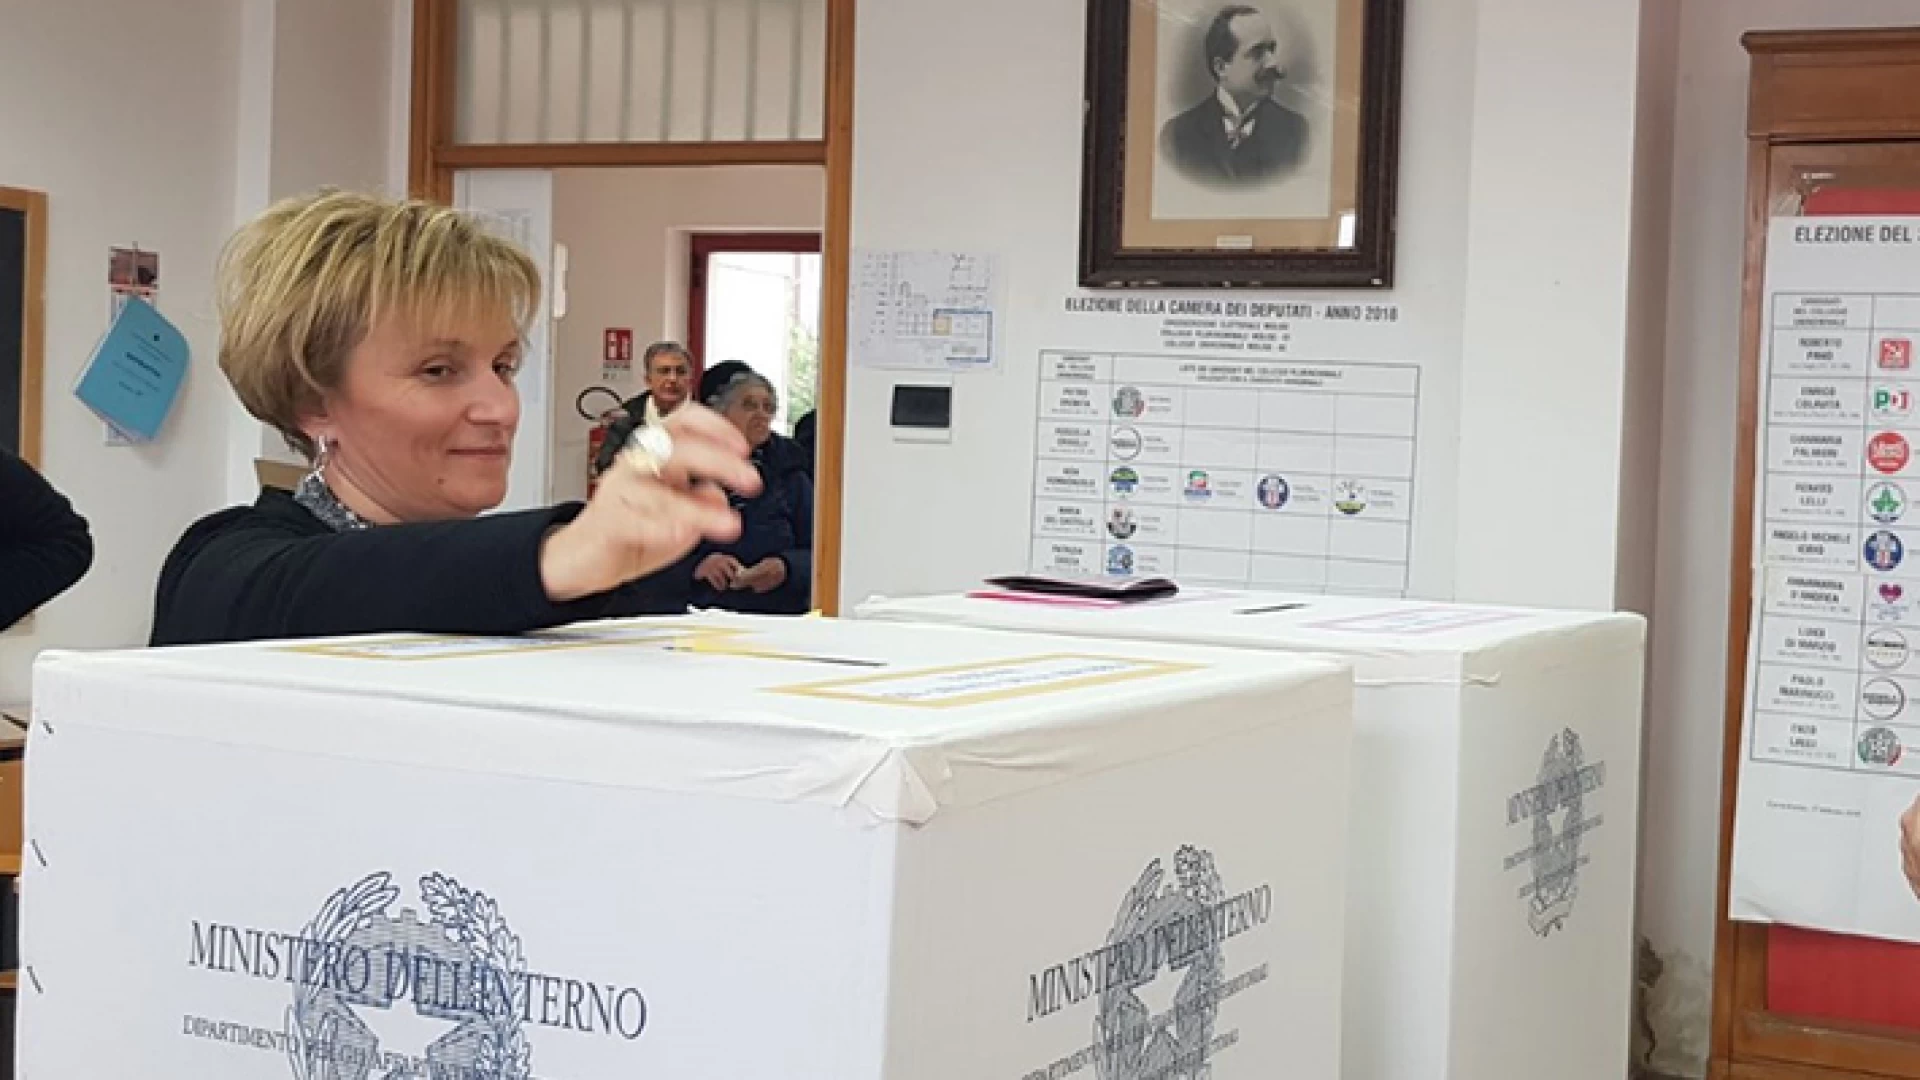 Monteroduni: il mistero della scheda in più , è caos a Monteroduni. Presentata da Nicola Altobelli denuncia di brogli elettorali contro ignoti.